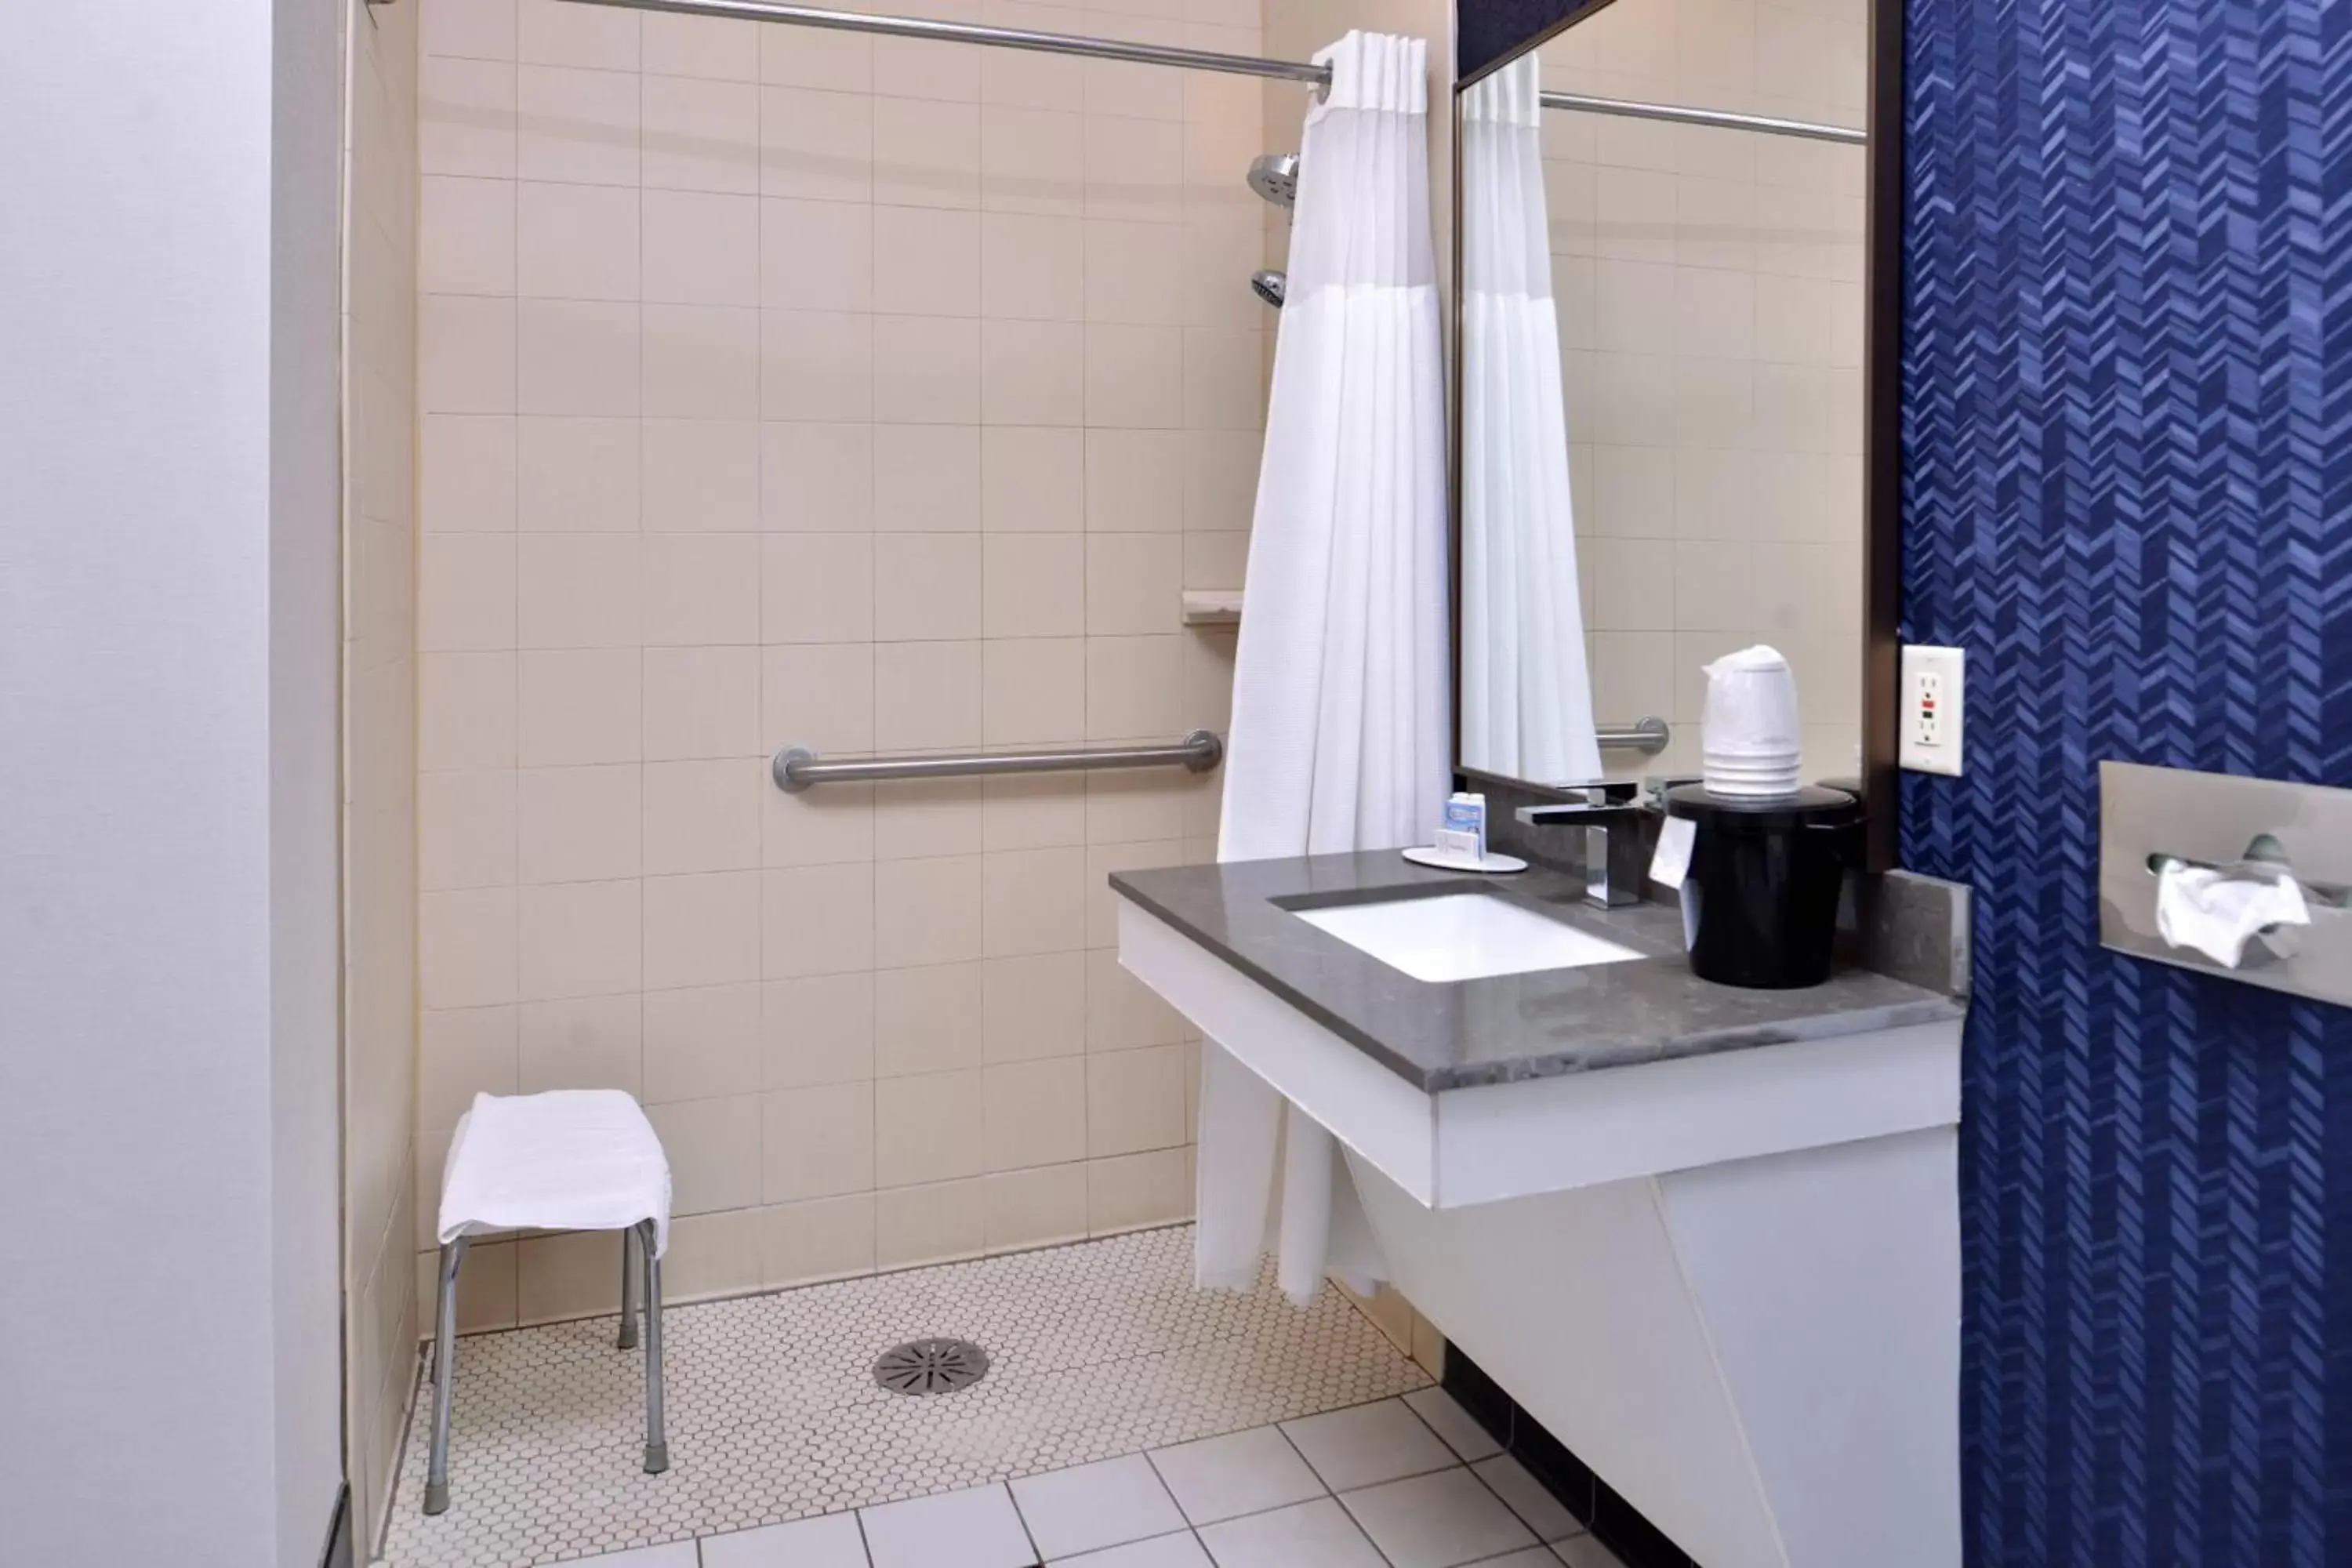 Bathroom in Fairfield Inn and Suites Beloit